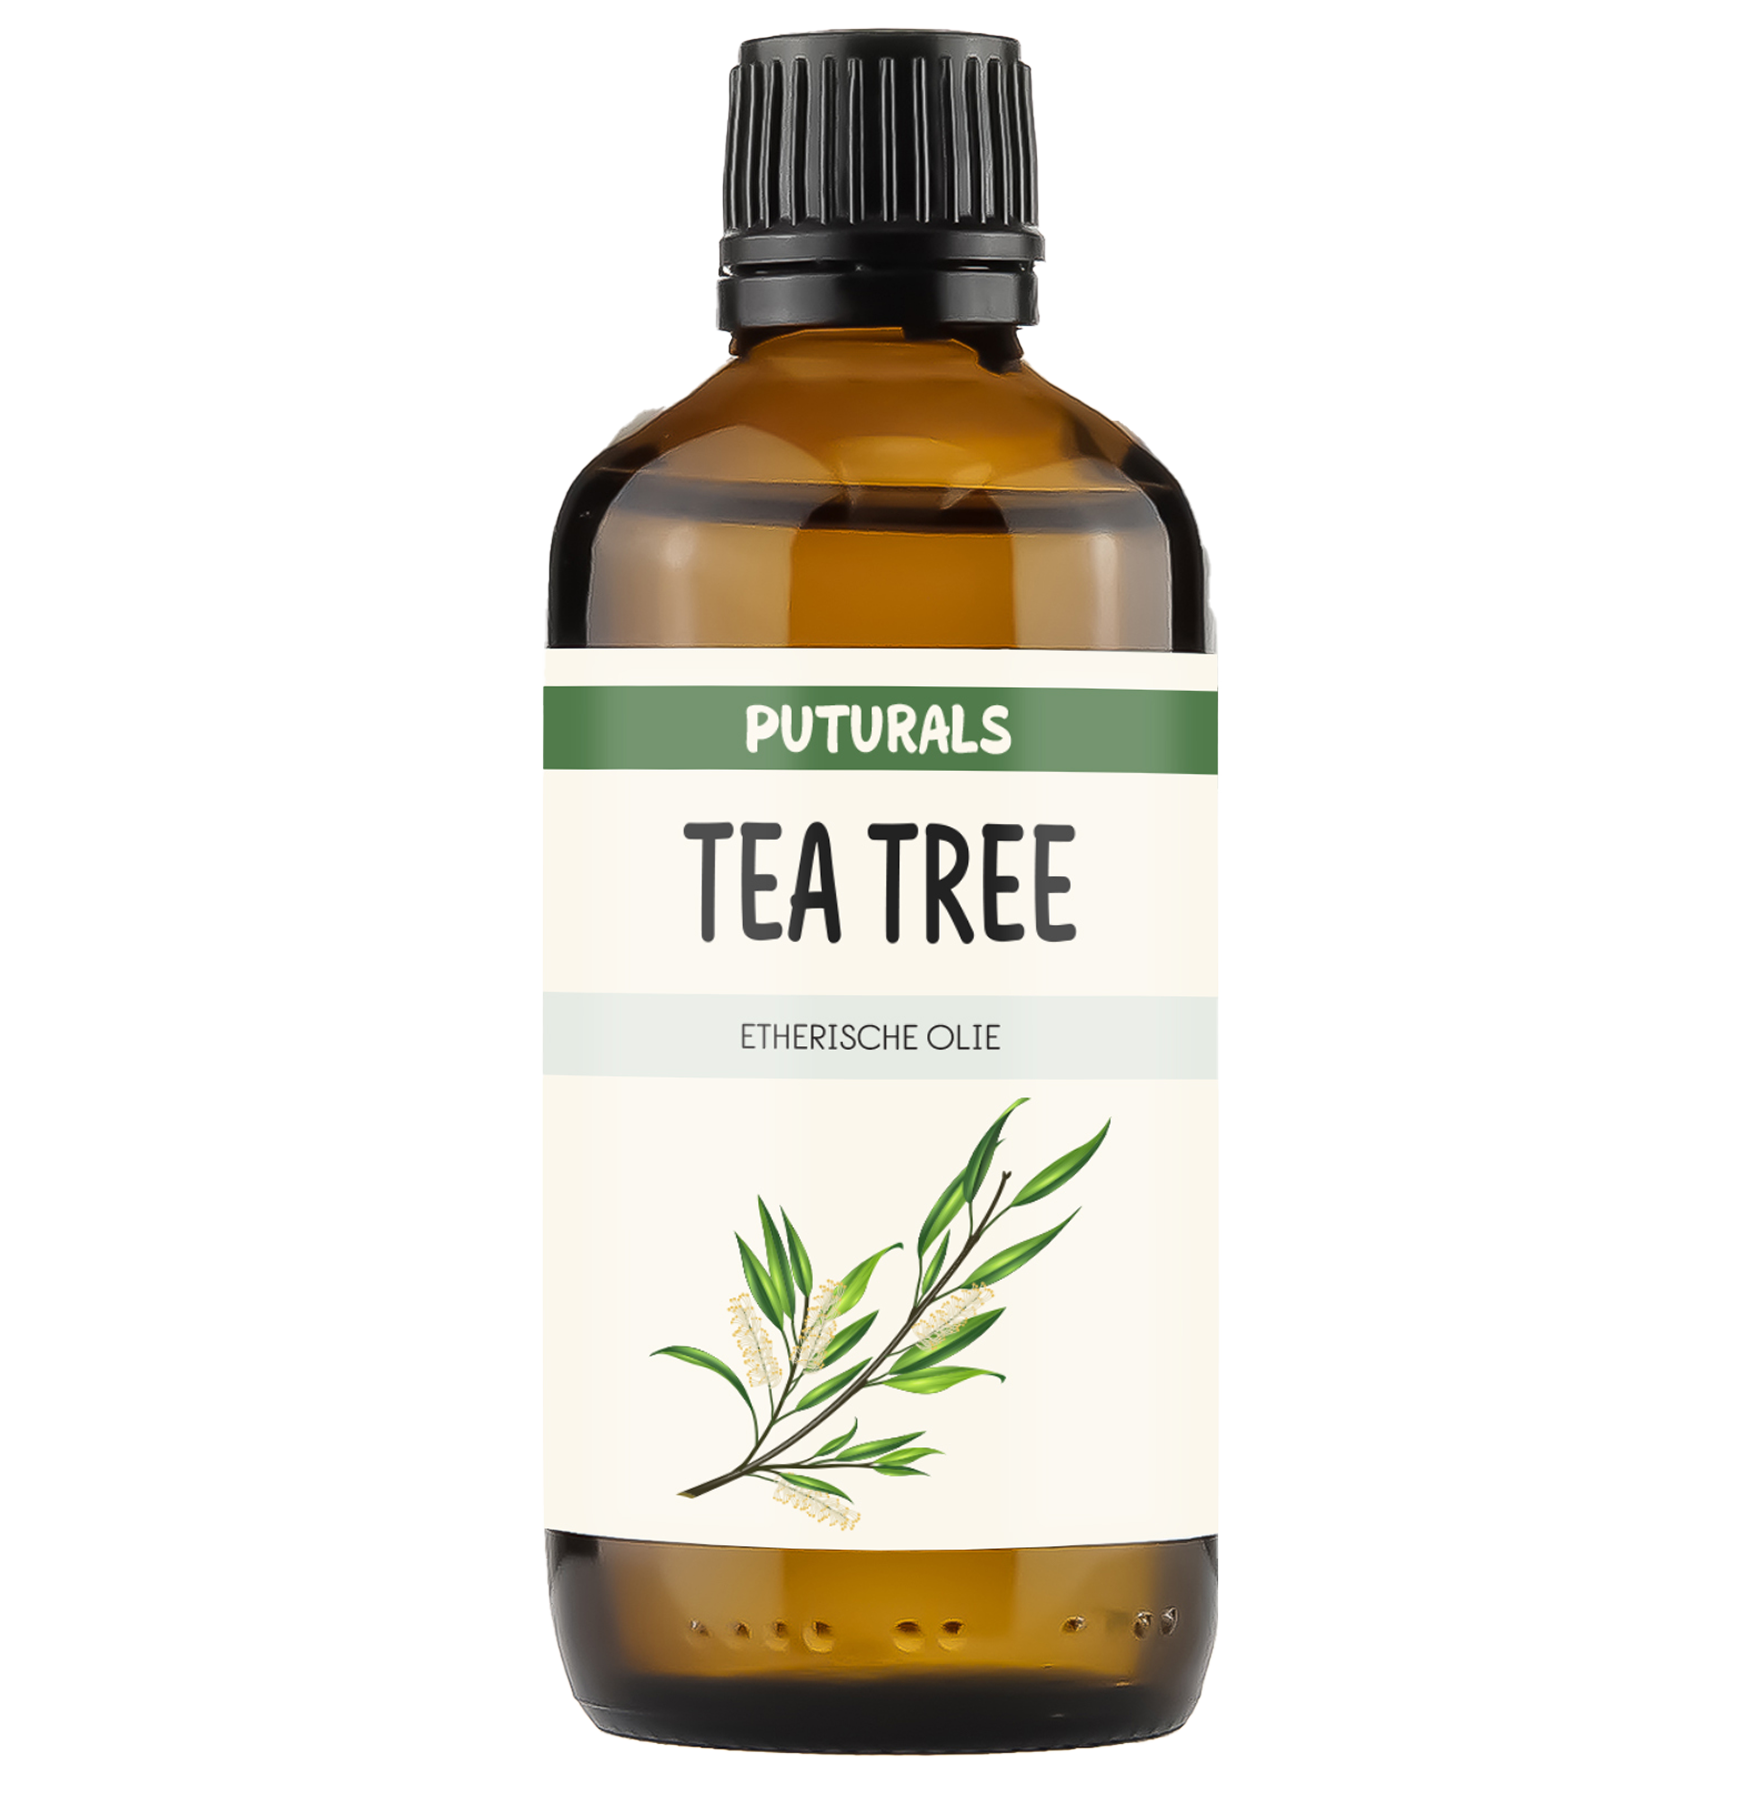 Puturals Tea Tree Olie 100% Biologisch en Puur